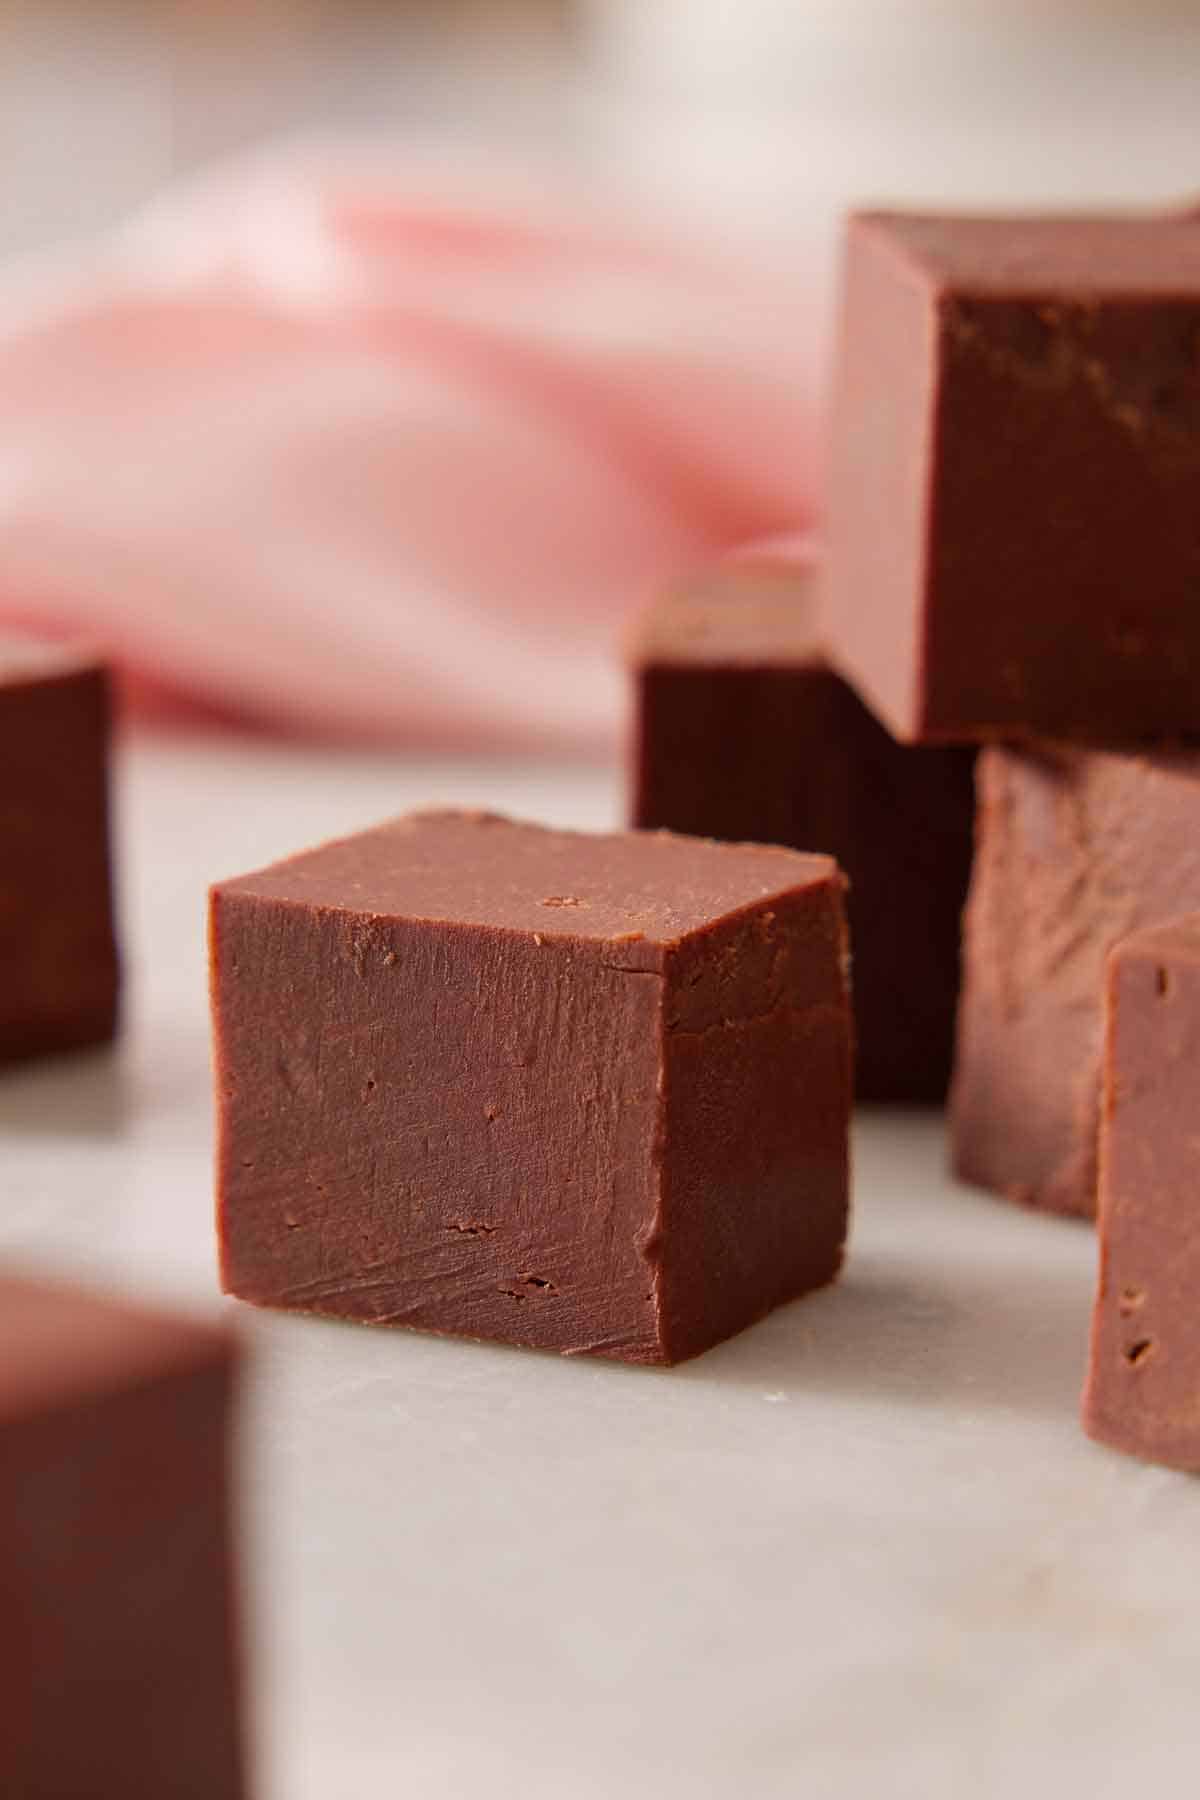 Multiple pieces of fudge cut into squares.